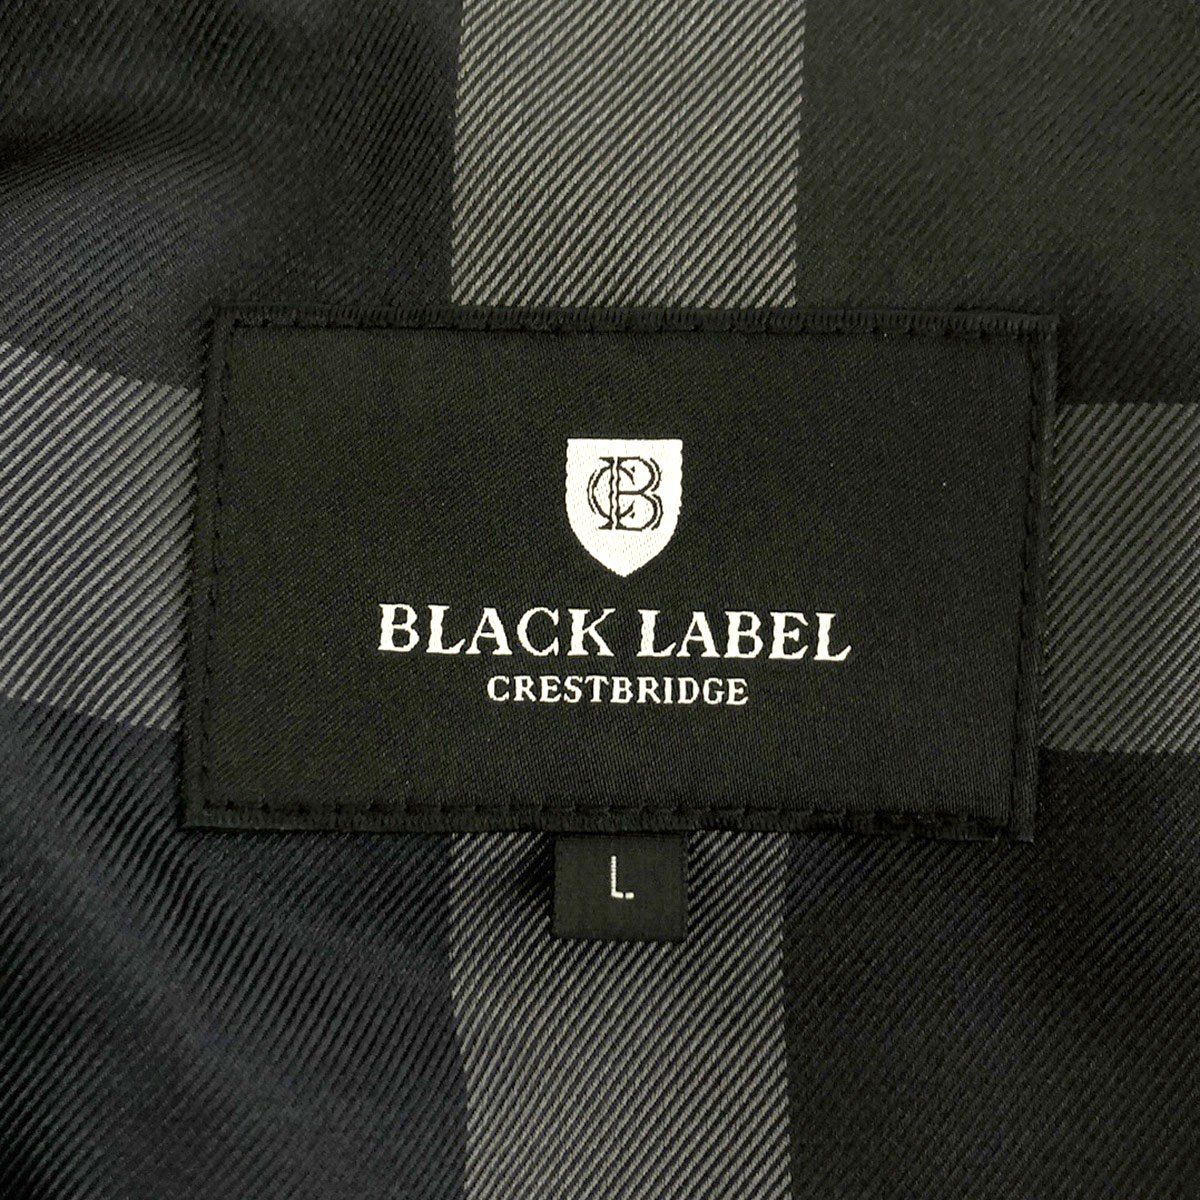 BLACK LABEL CRESTBRIDGE ブラックレーベルクレストブリッジ 2Bナイロンセットアップスーツ ネイビー ジャケットL/ボトムLL  51E10-230-28 51R10-230-28